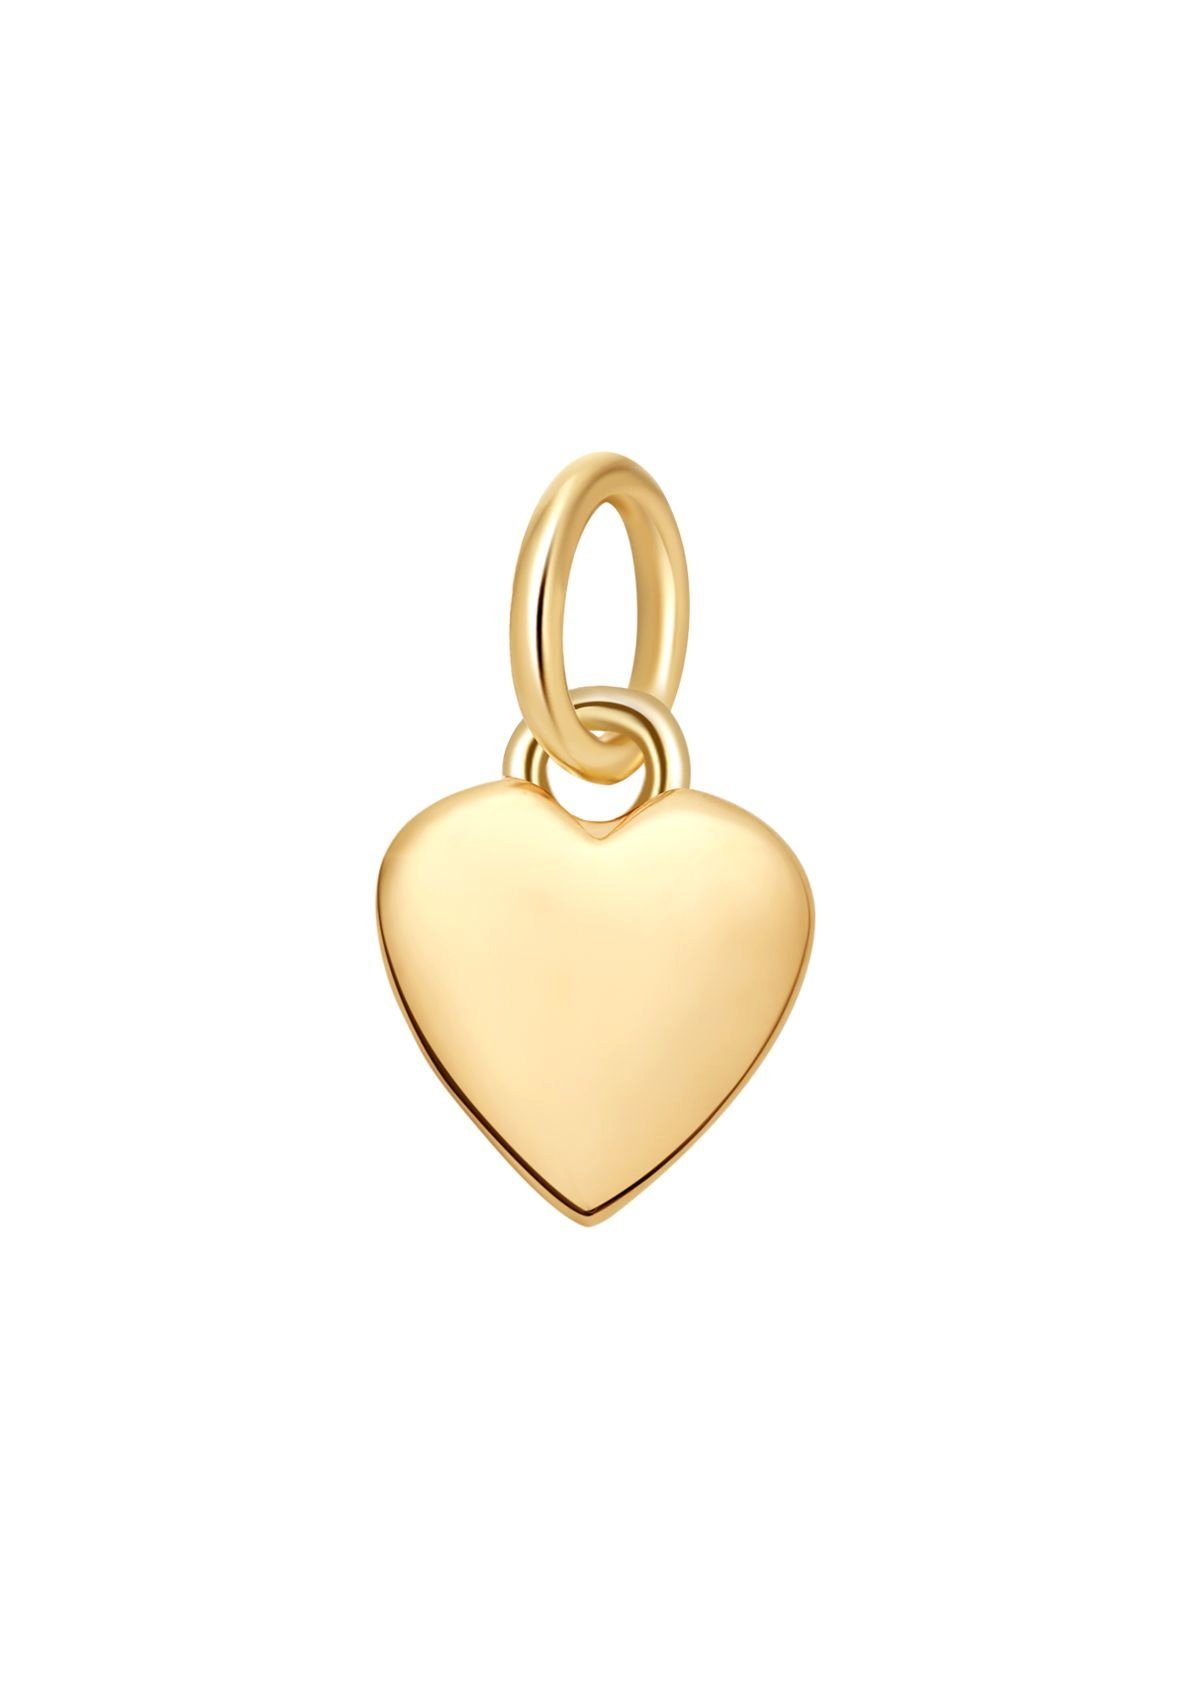 Dear Me Goldkette 585 Gold Kette Mitgefühl mit Herz Anhänger, 14K Massivgold  Halskette mit Liebe Charm, 585 Echtgold Schmuck